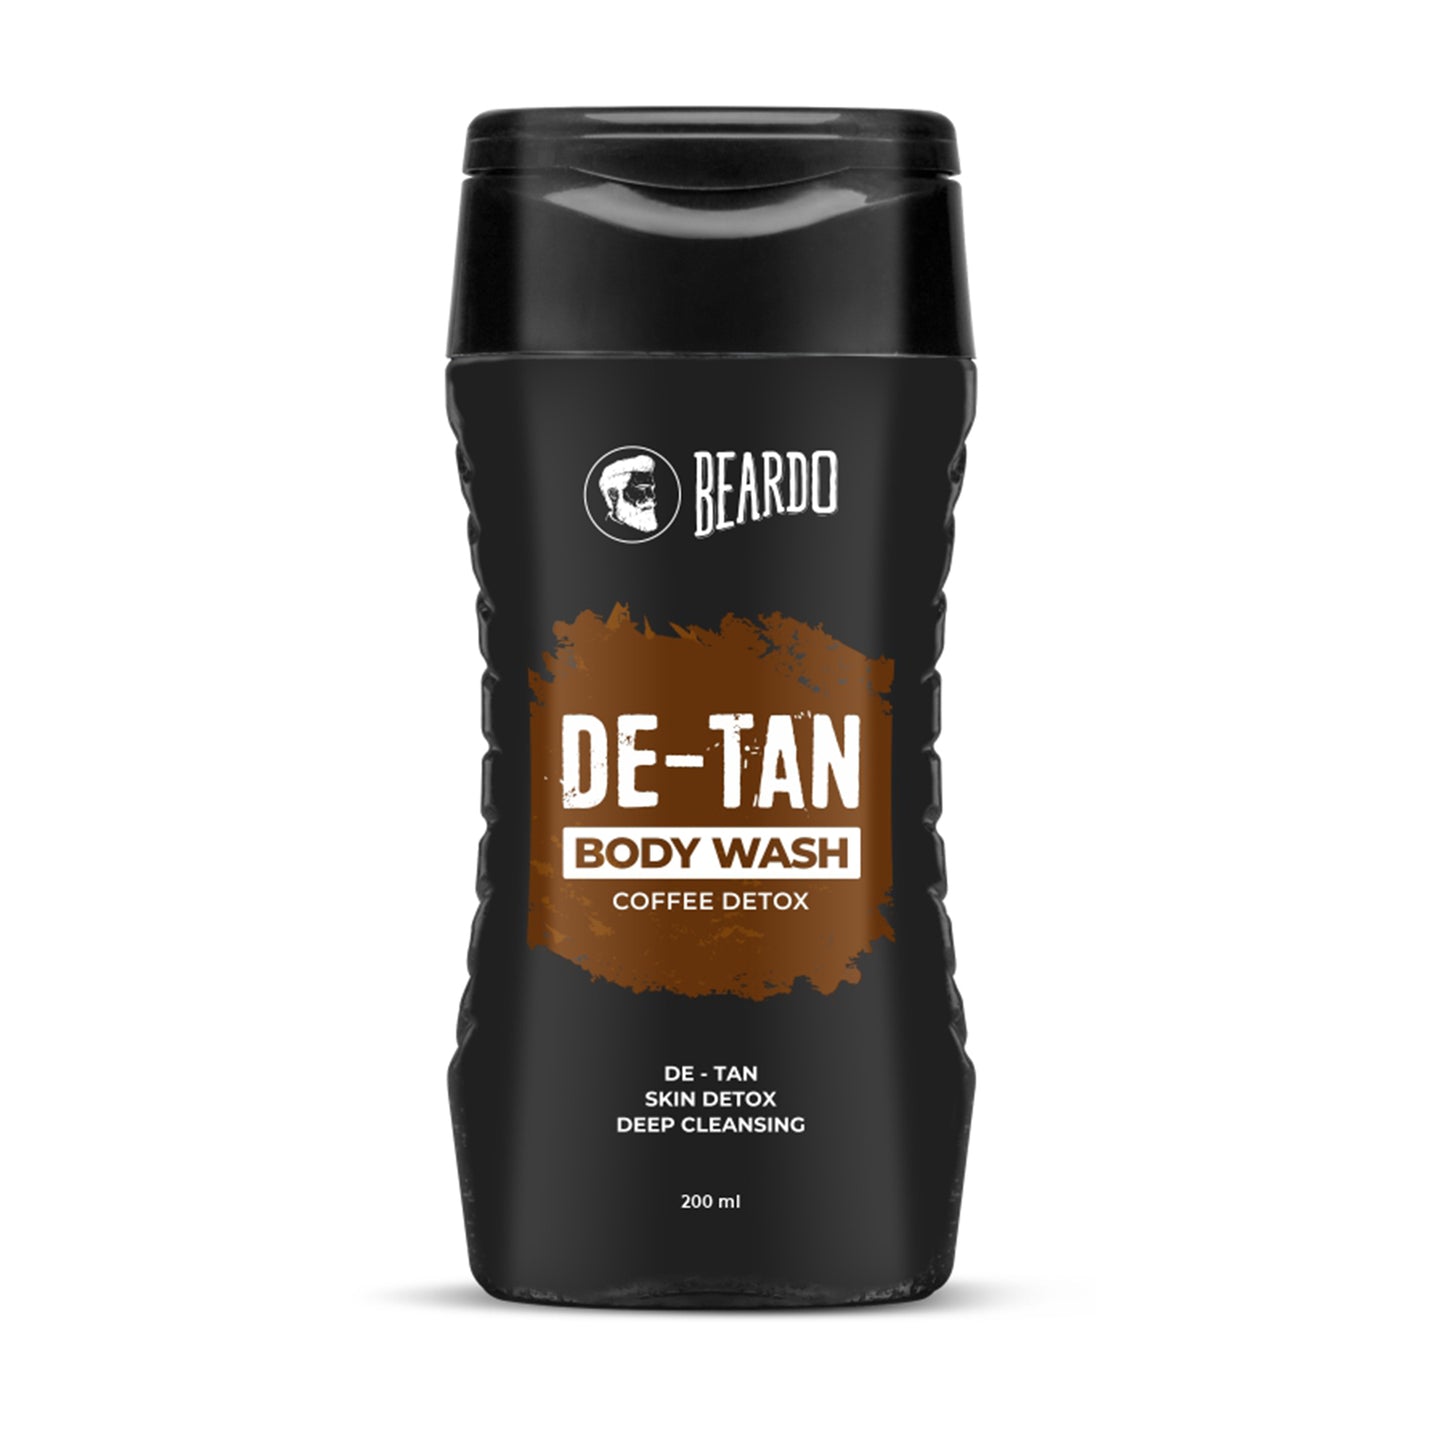 coffee body wash, de tan body wash, beardo de tan body wash